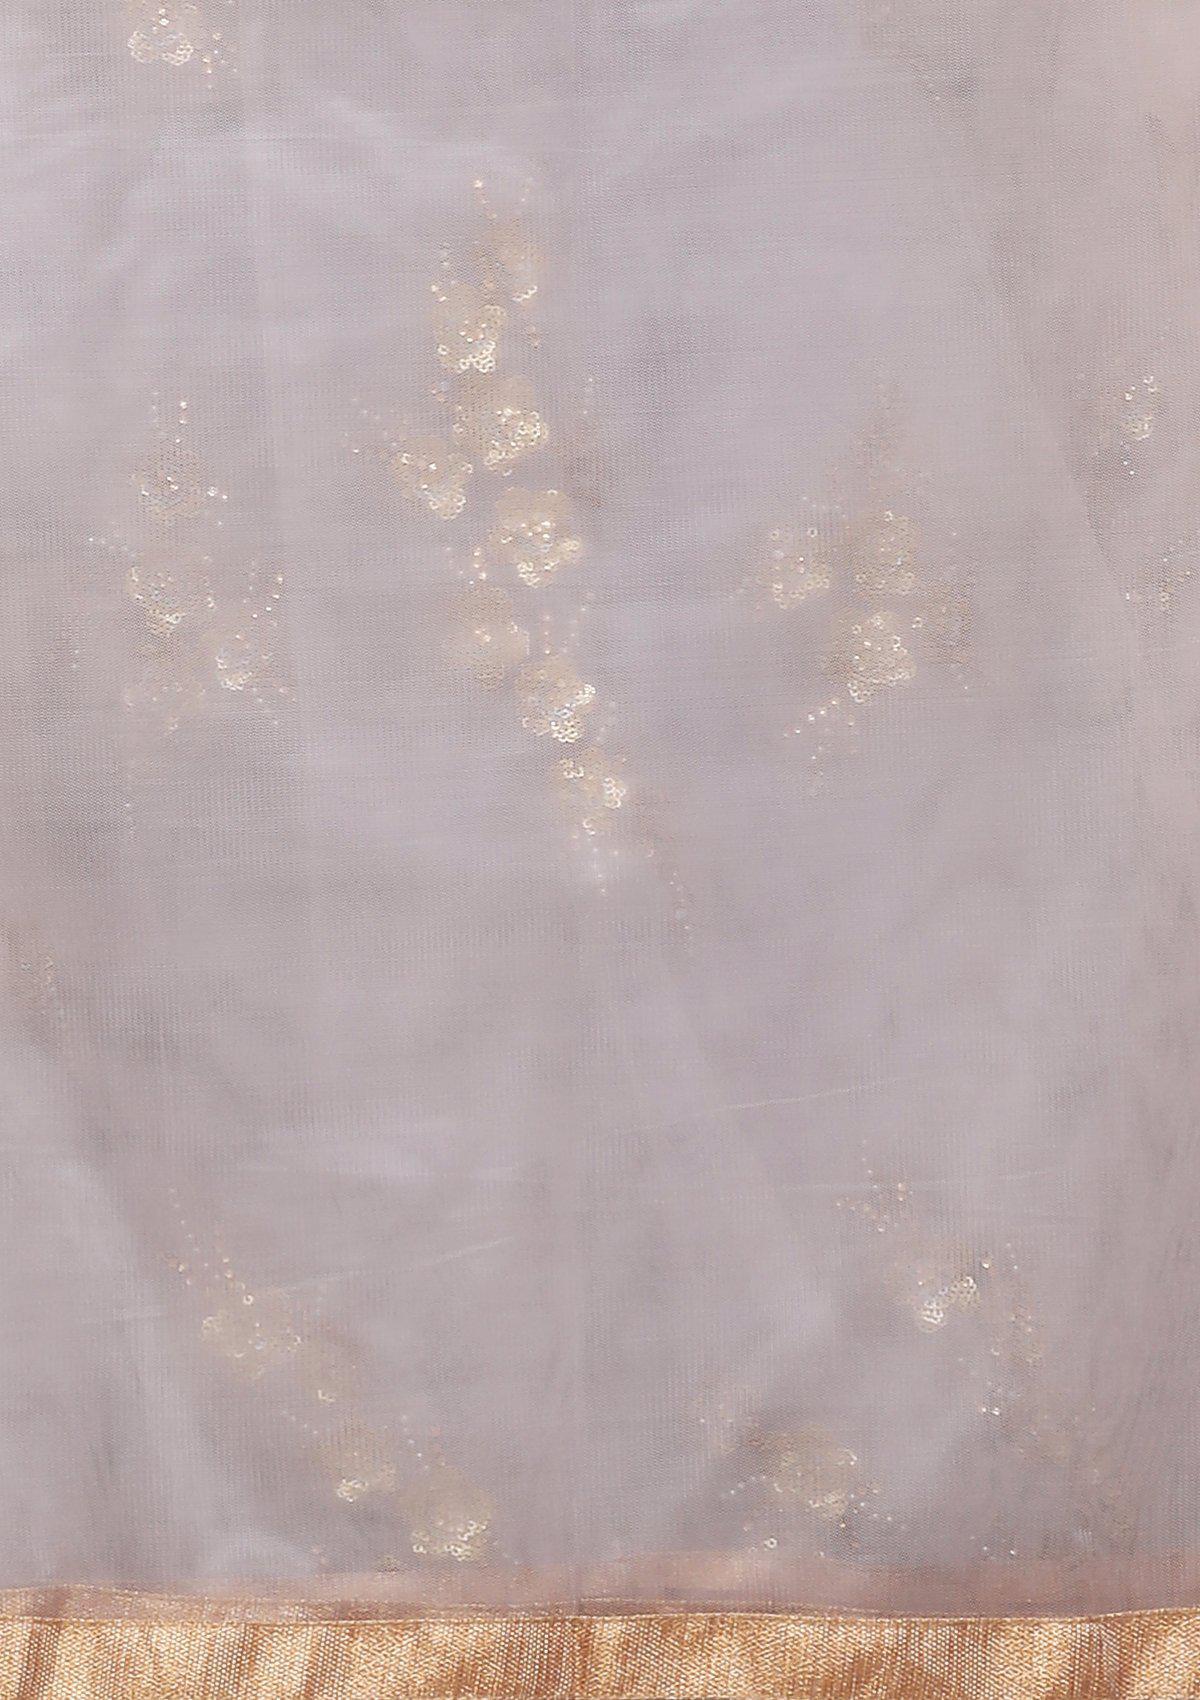 Lavender Embellished Net Designer Gown-Koskii